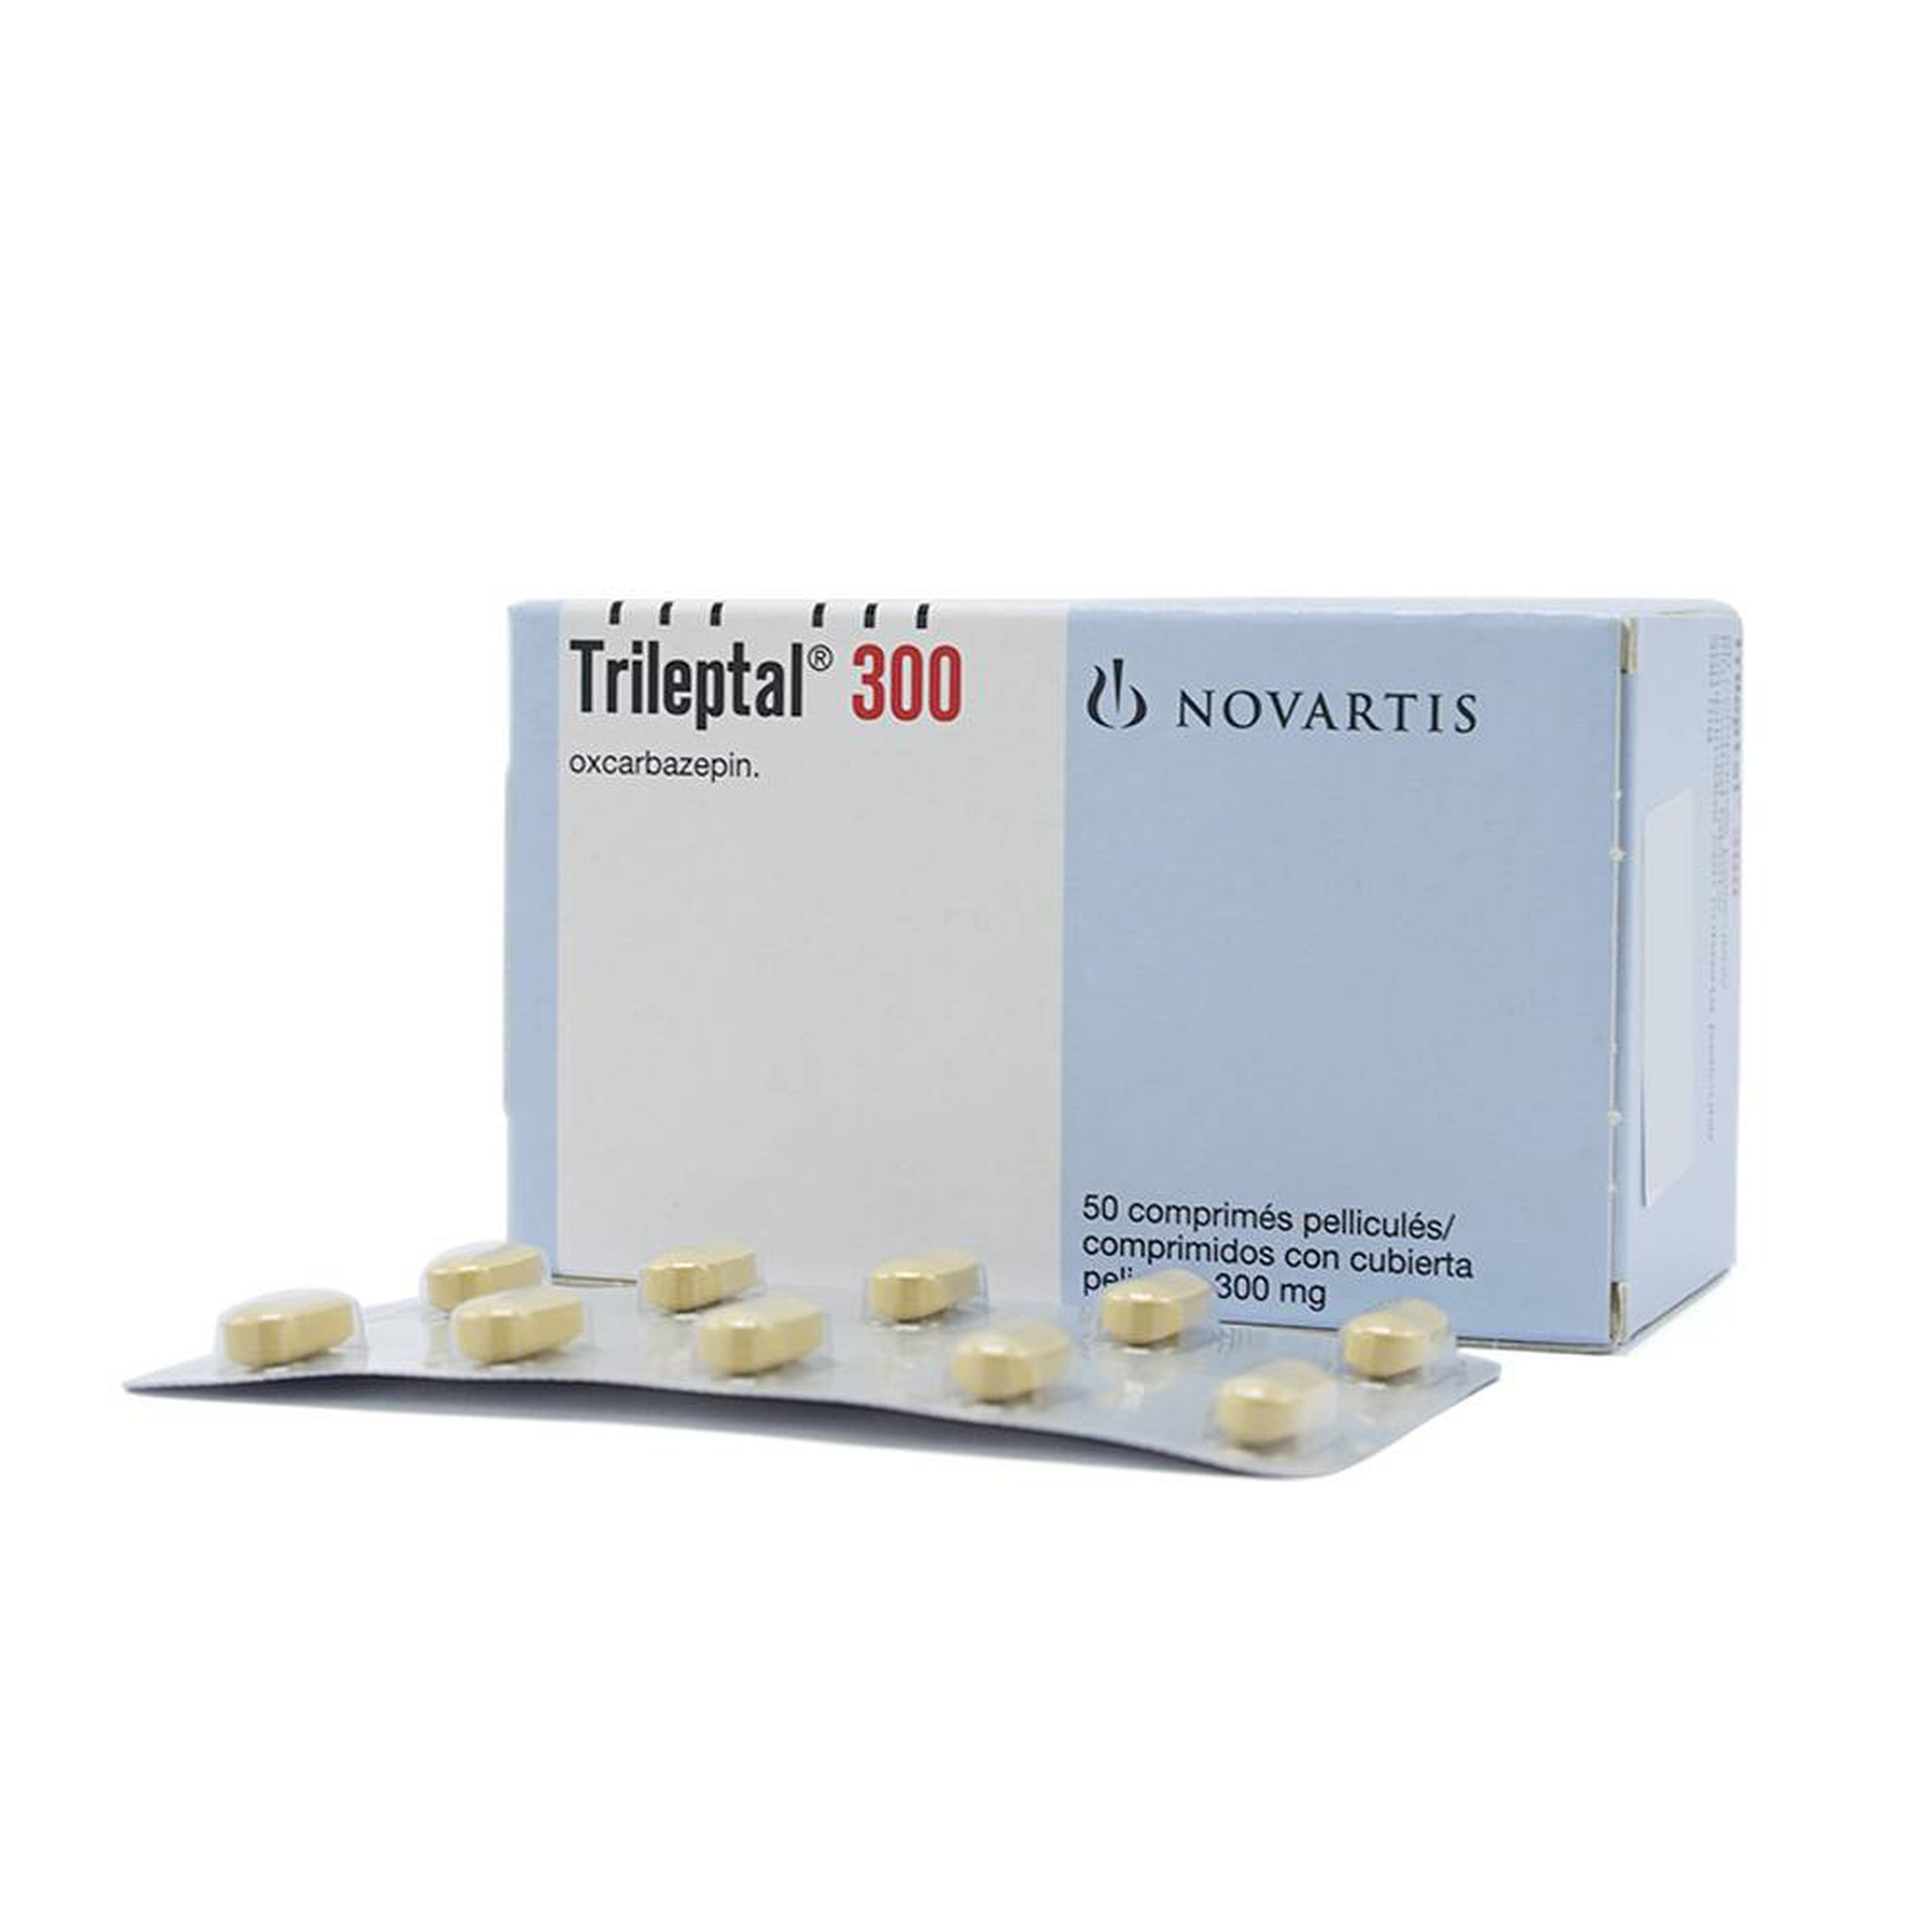 Thuốc Trileptal 300 Novartis điều trị động kinh cục bộ (5 vỉ x 10 viên)